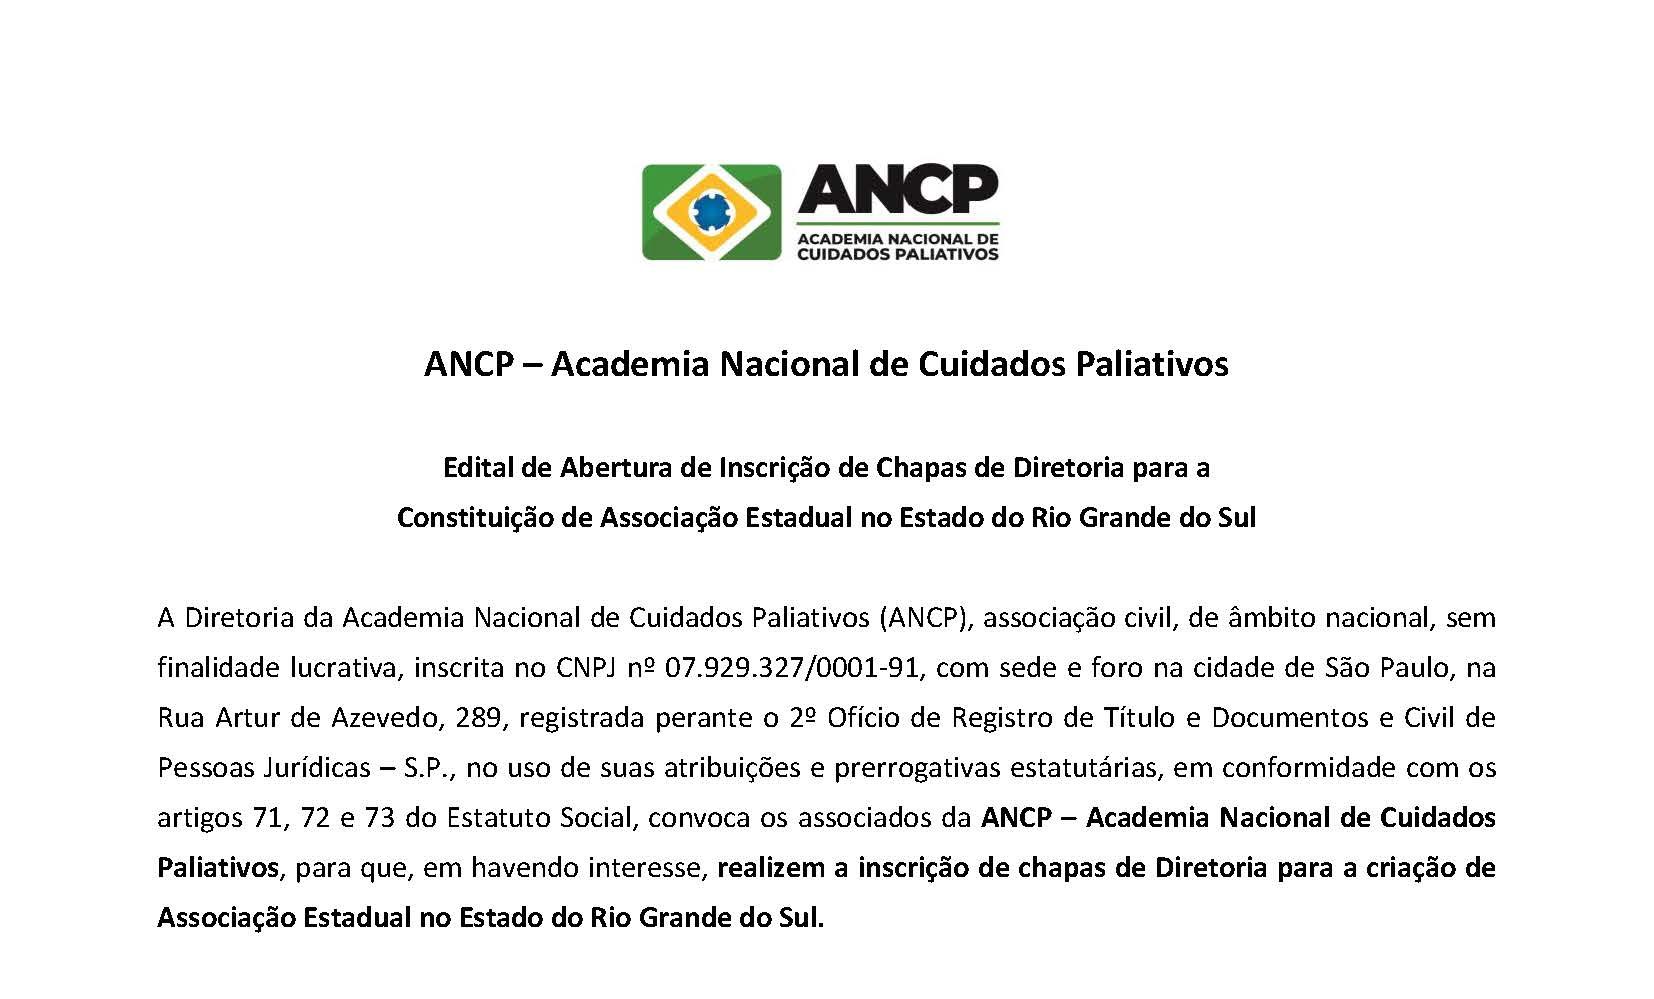 ANCP divulga Edital de Abertura de Inscrição de Chapas de Diretoria Estadual Rio Grande do Sul